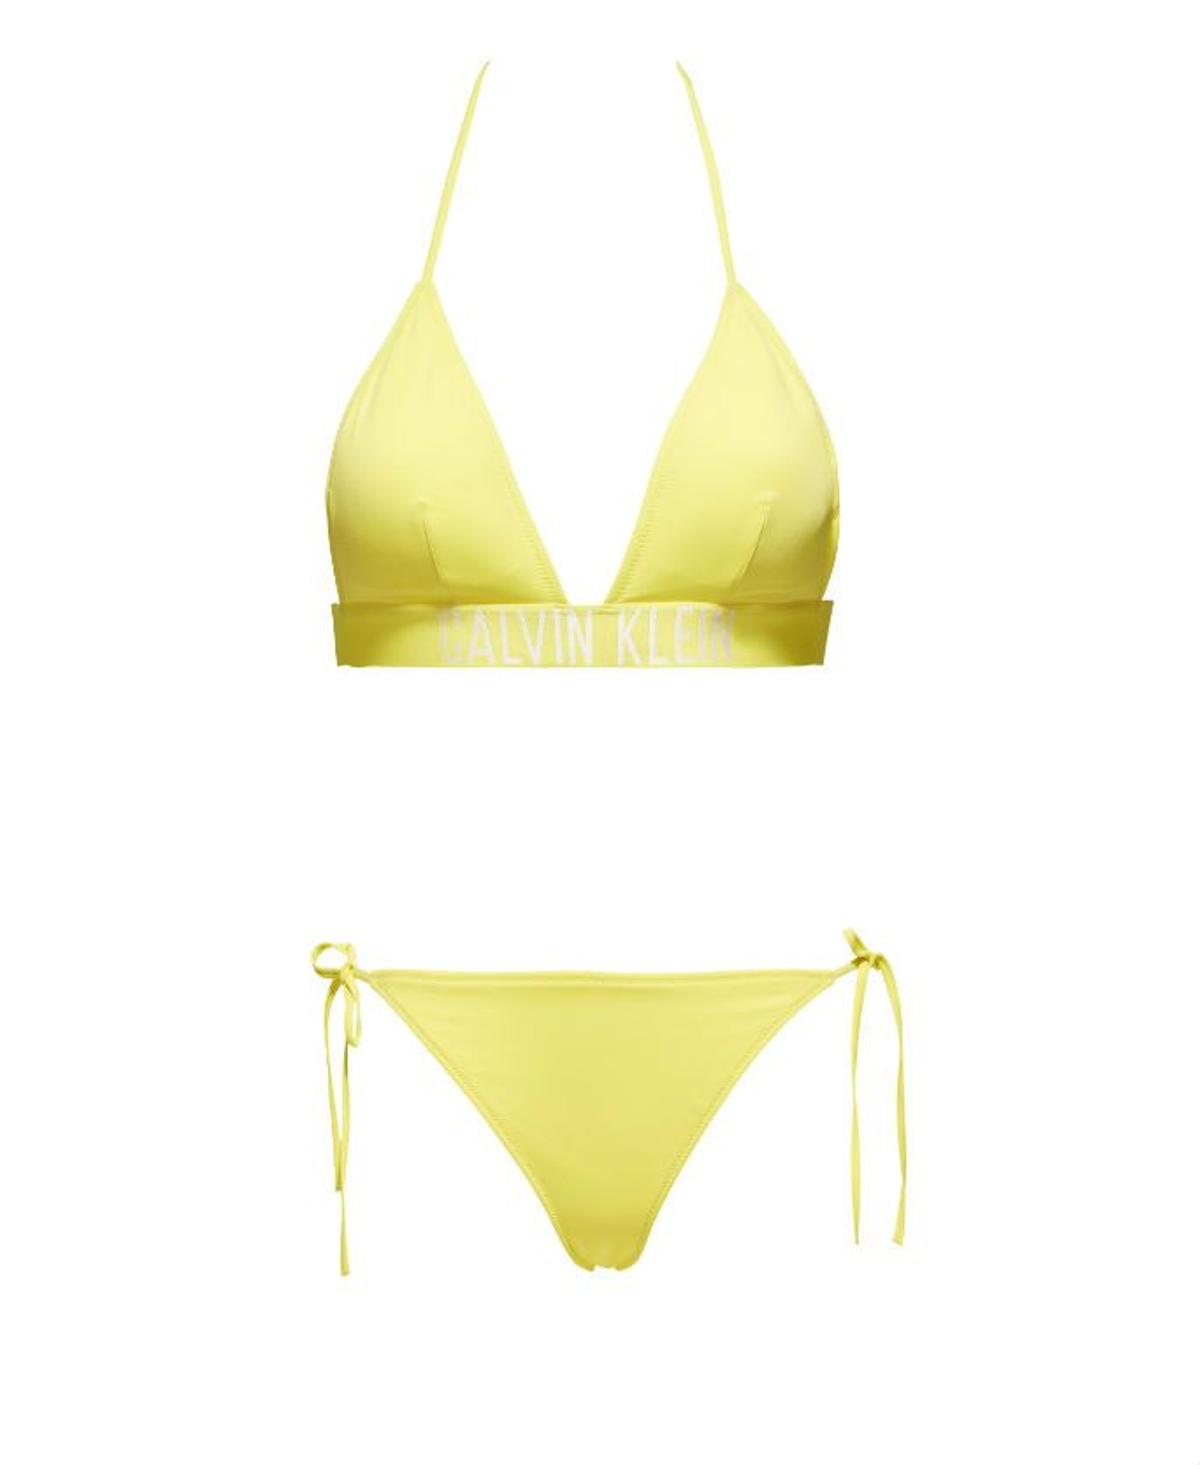 Prendas y complementos en amarillo: bikini de Calvin Klein